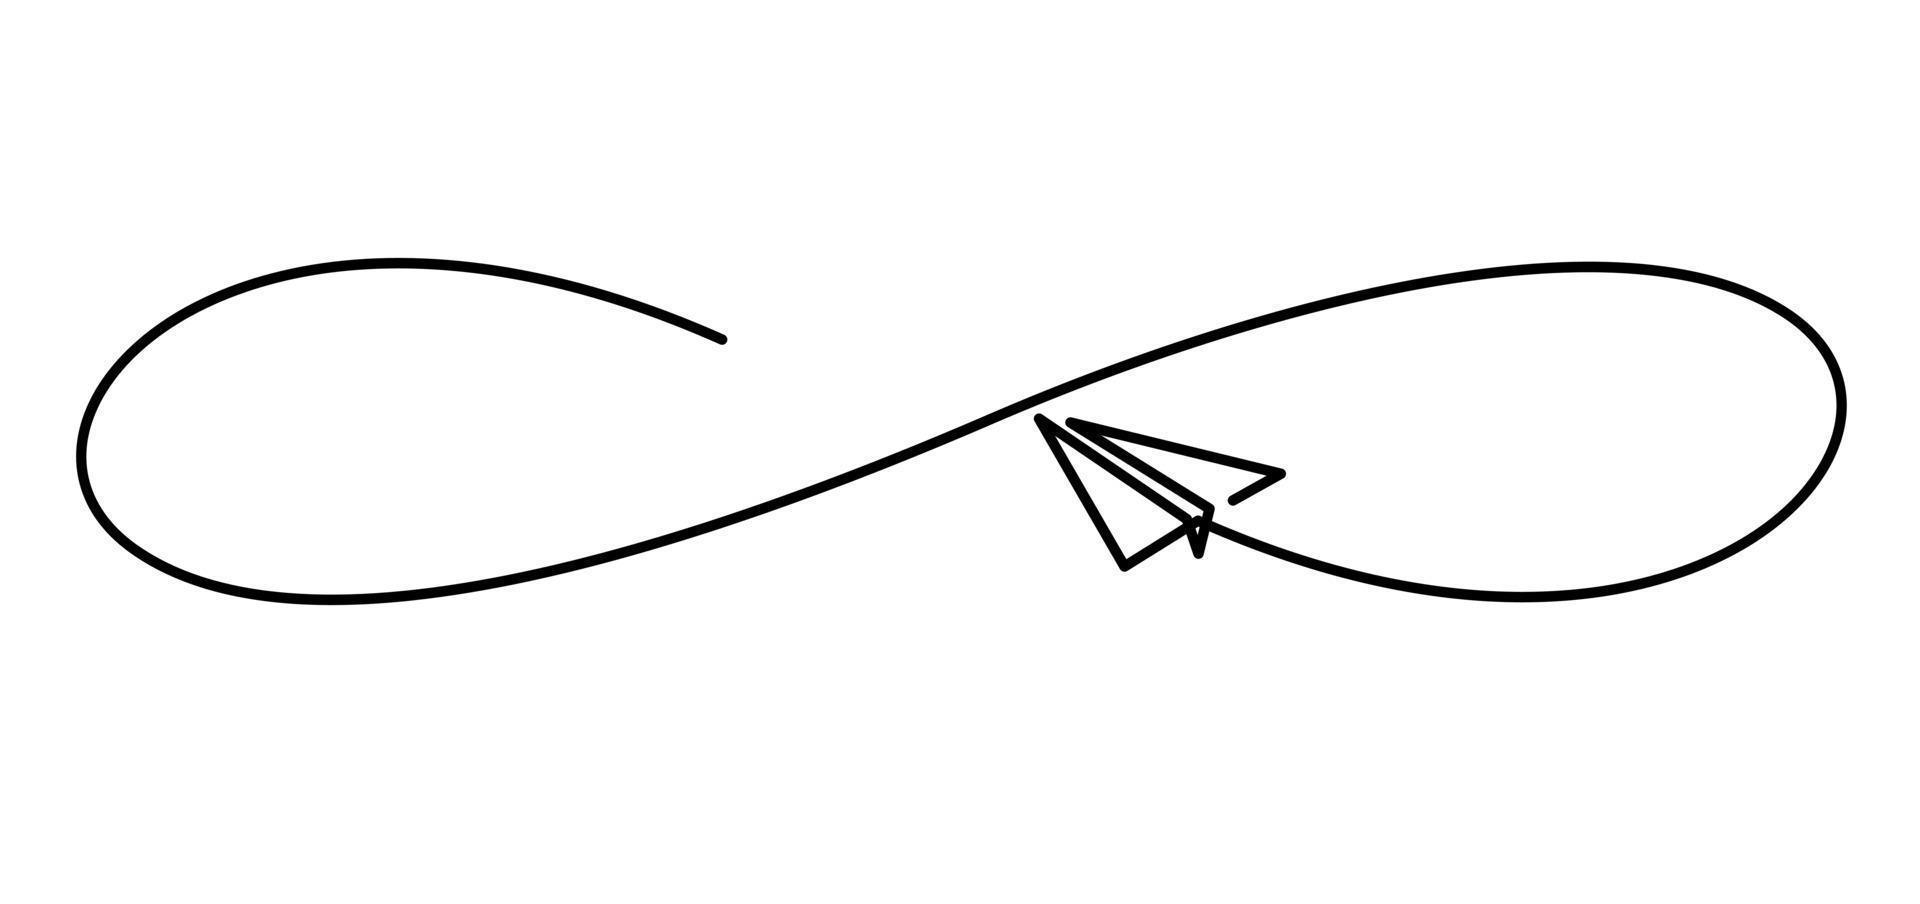 kontinuerlig linjeritning av flygplanspapper som flyger infinity design vektor